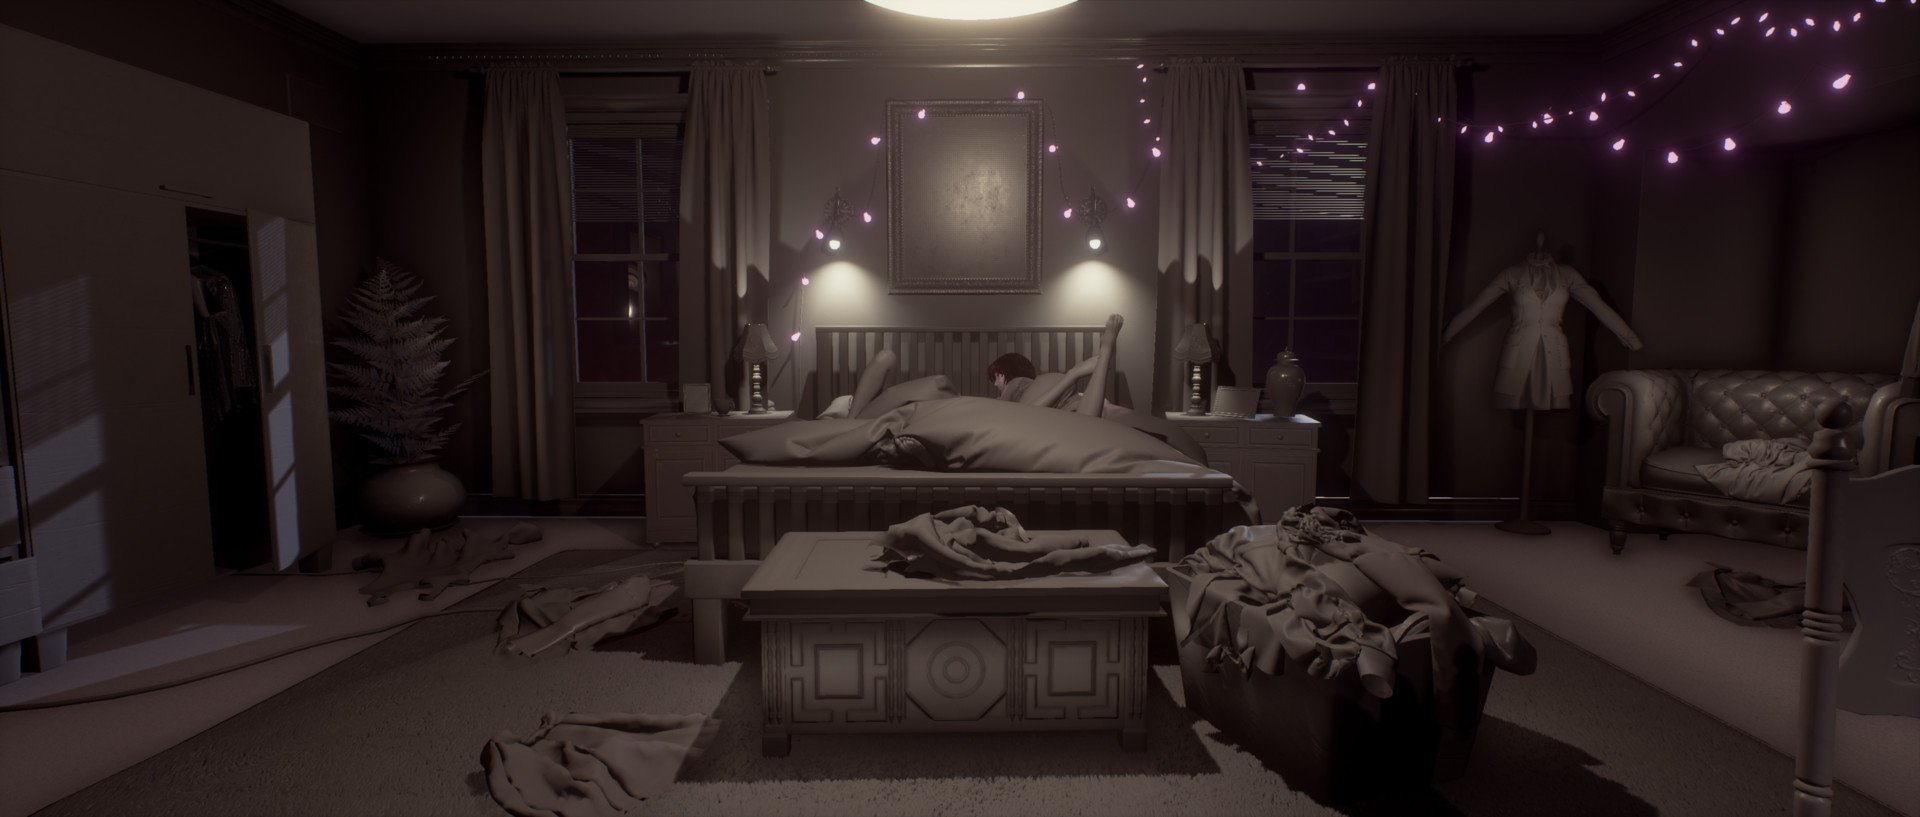 Спальня для фотошопа ночью